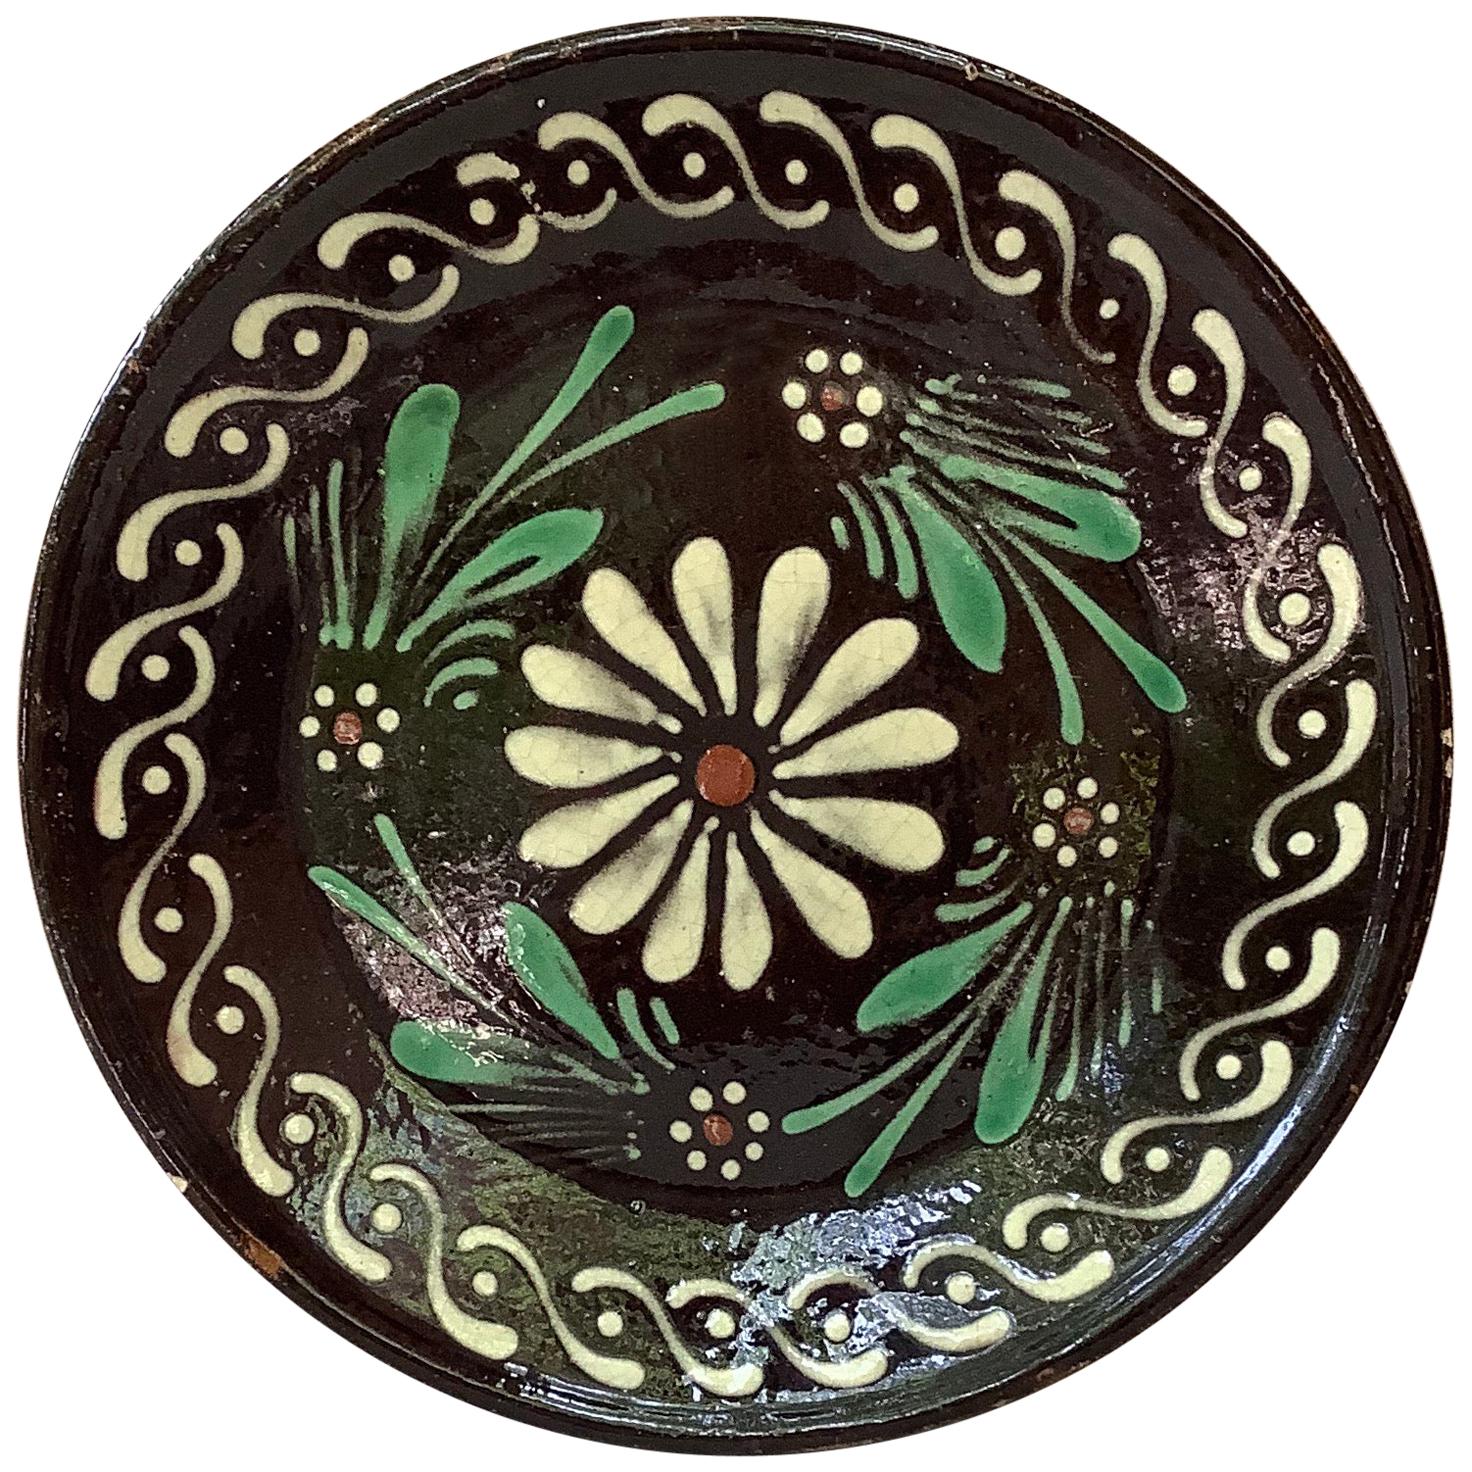 Geblümter Teller aus Savoie-Keramik, Frankreich